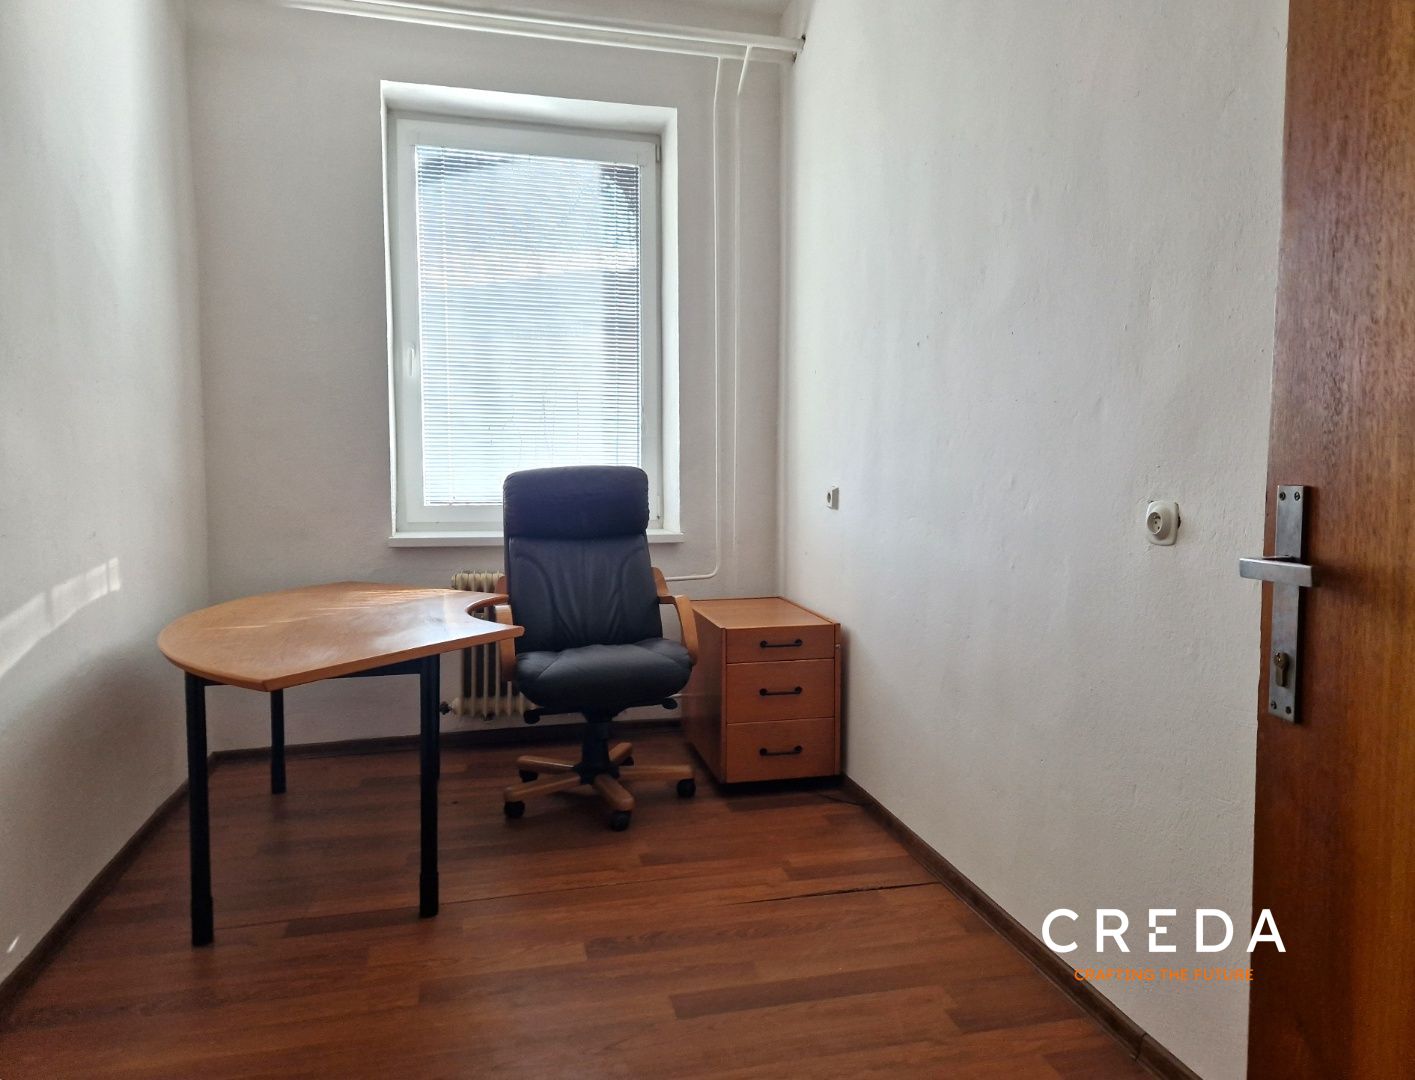 CREDA | prenájom kancelária 9,22 m2, Nitra, Cabajská 21